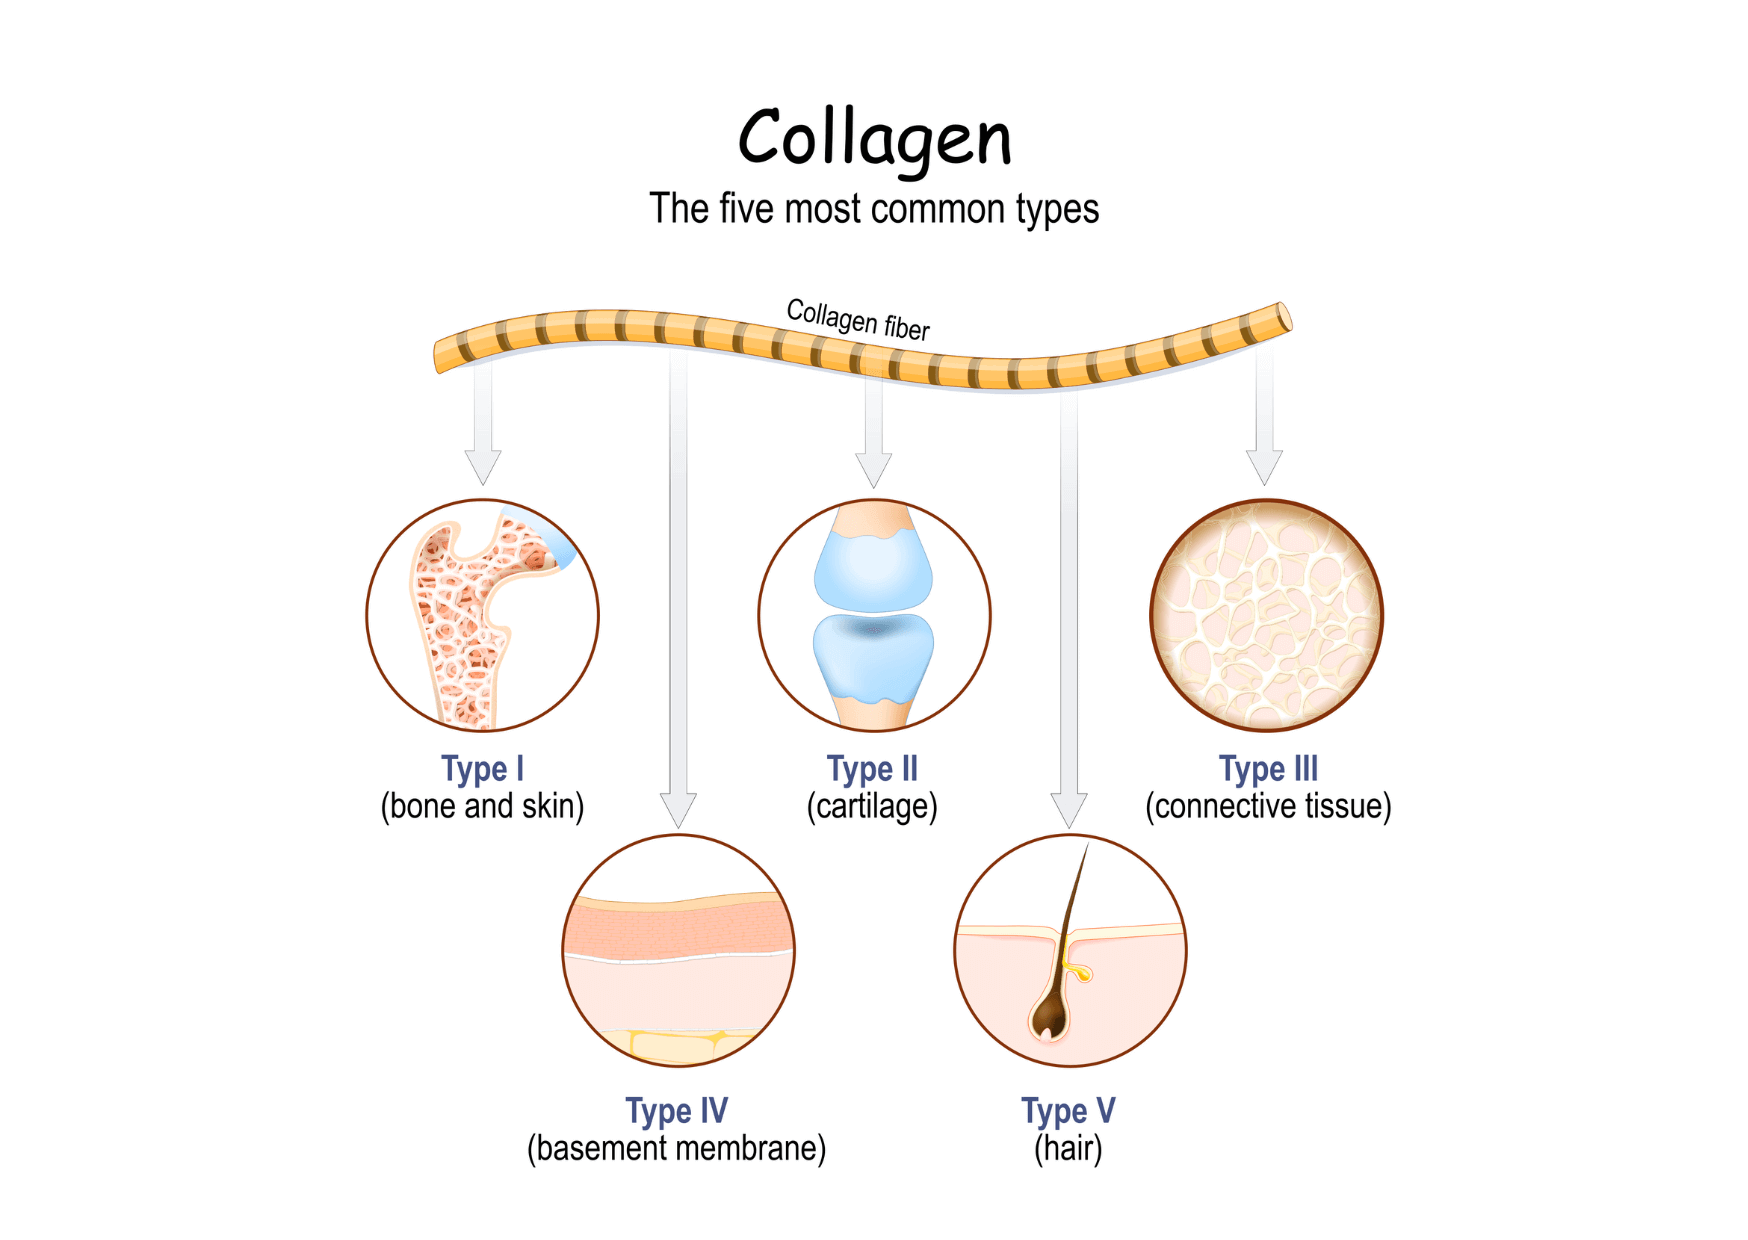 Collagen types